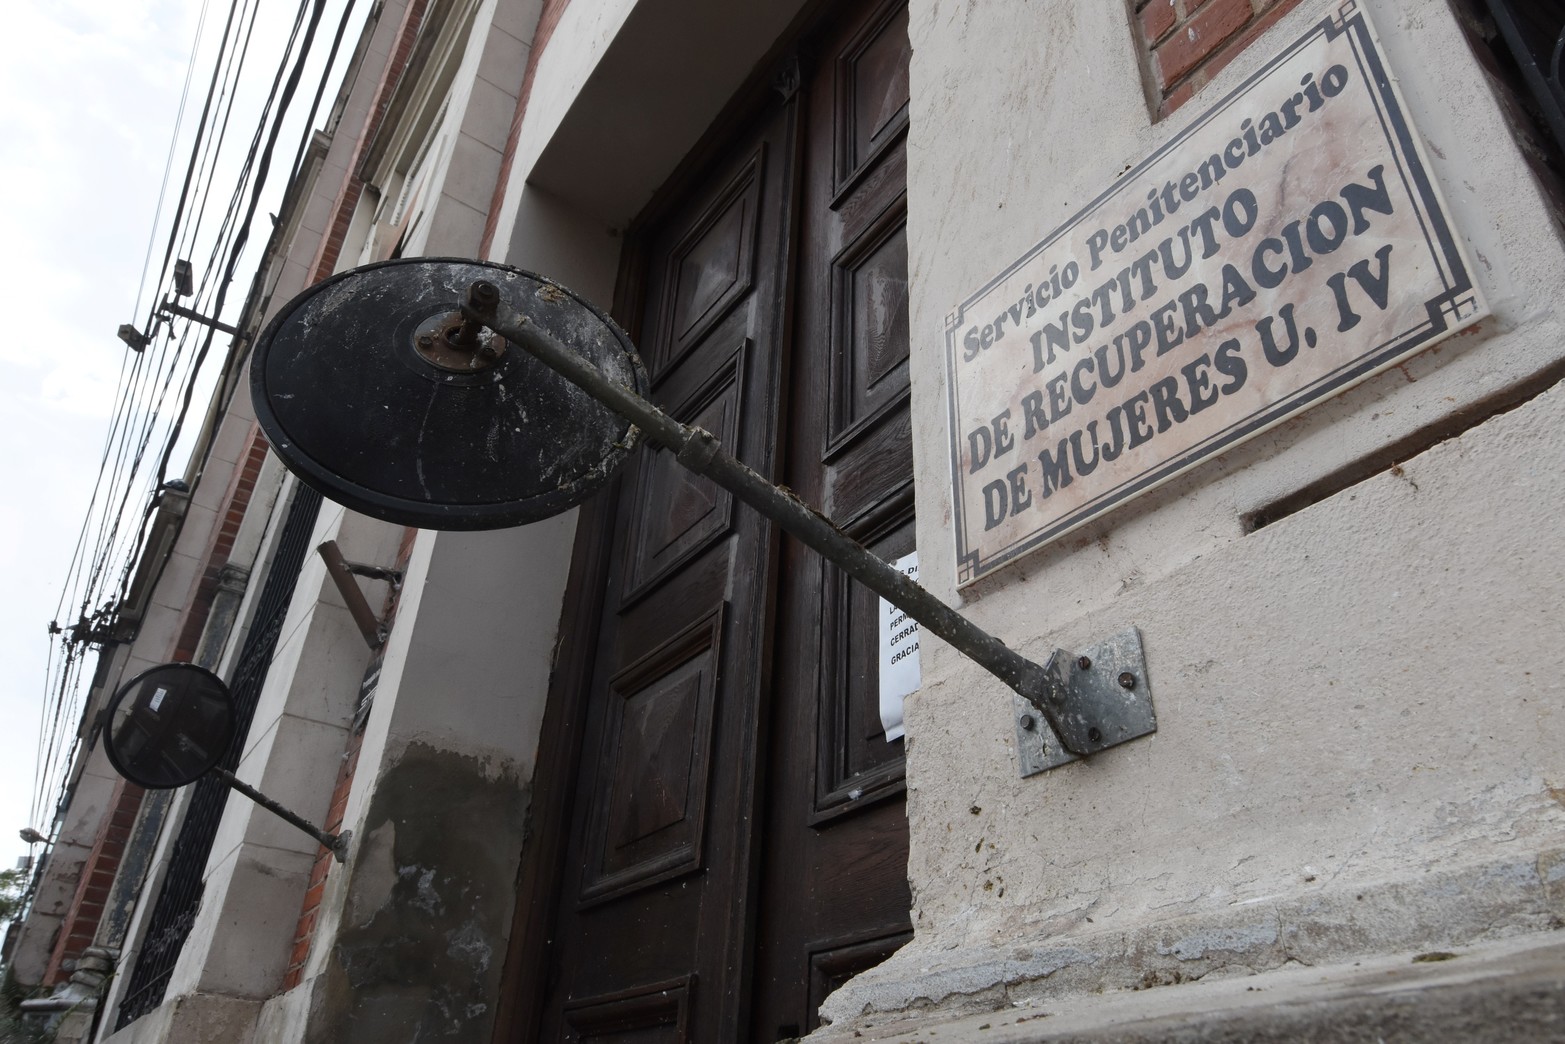 Un viejo cartel sobre calle Uruguay indica el ingreso al penal. Para poder entrar, cualquier visitante debe dejar su DNI, pertenencias de valor y es requisado. Crédito: Flavio Raina